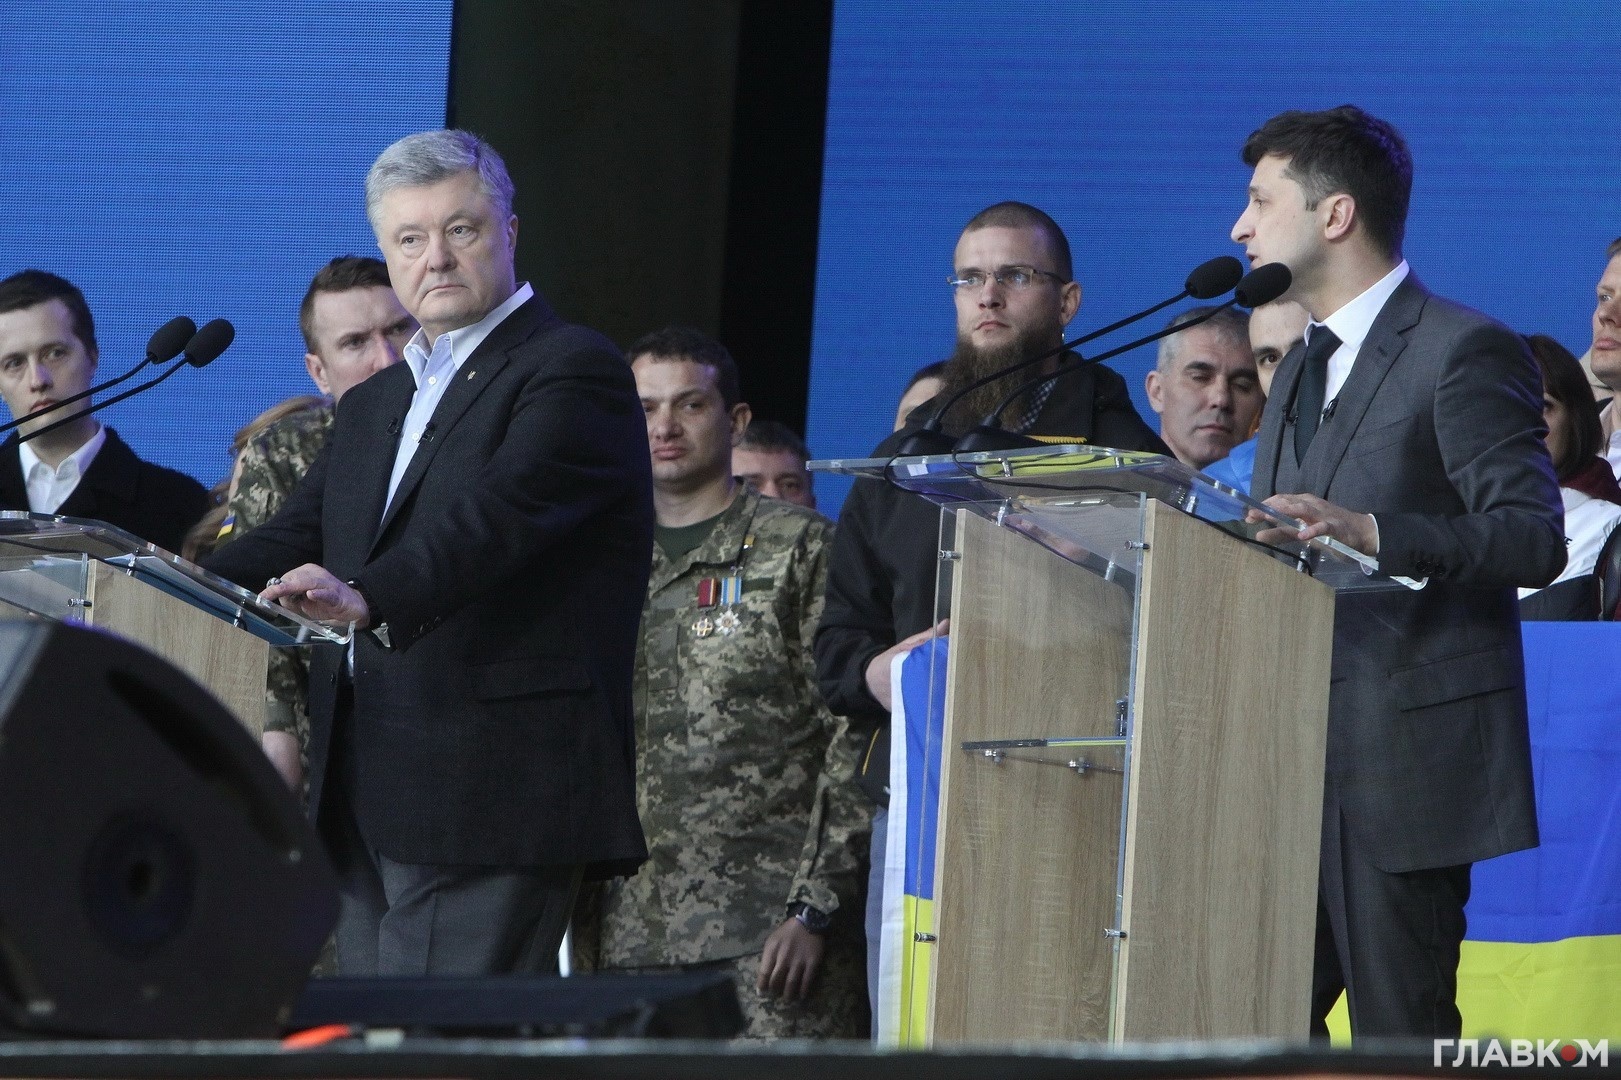 Петро Порошенко та Володимир Зеленський під час дебатів на НСК Олімпійський, 19 квітня 2019 року